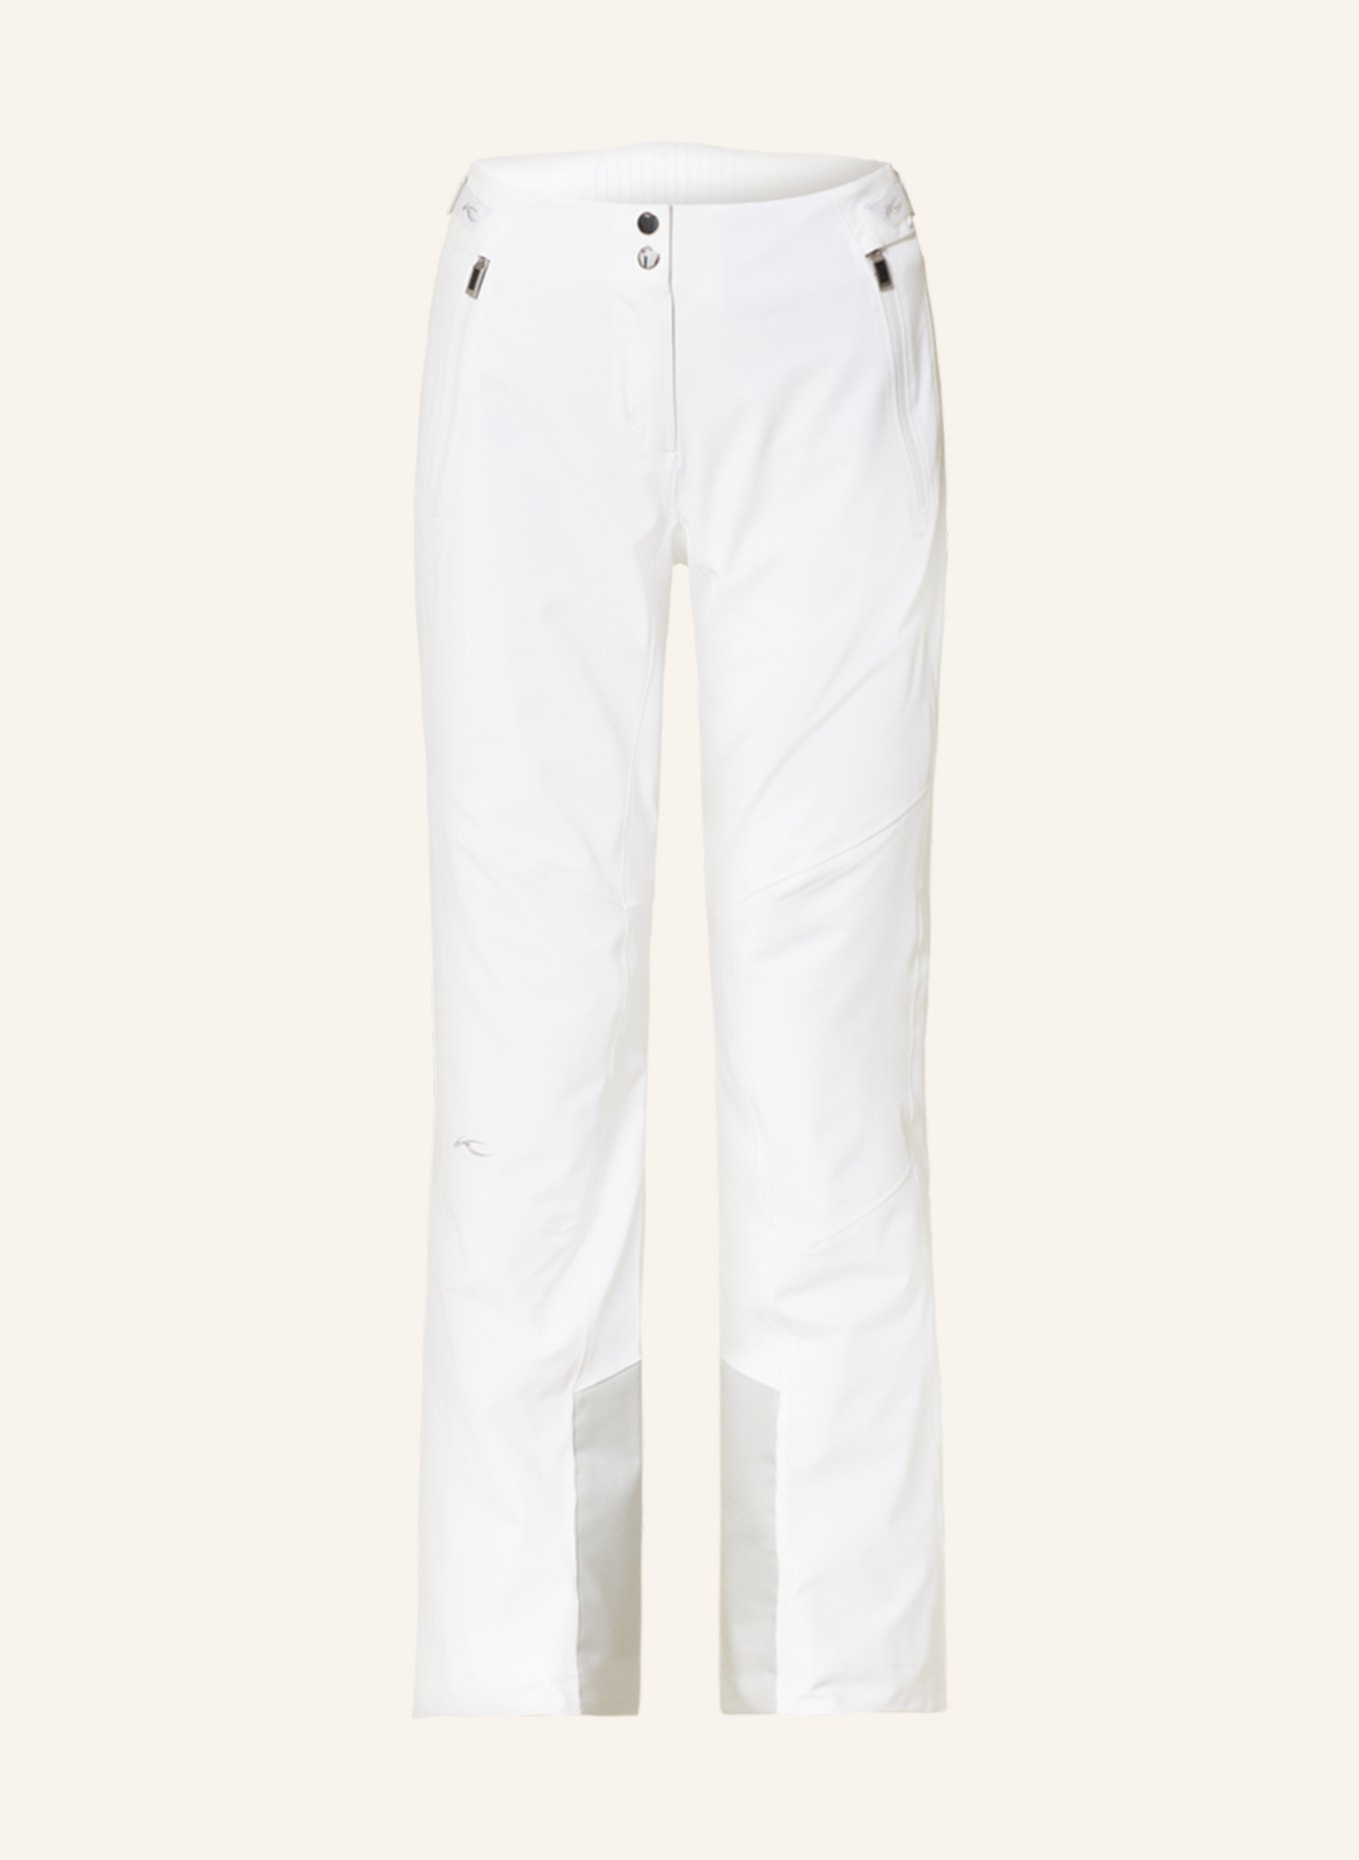 KJUS Ski pants, Color: WHITE (Image 1)